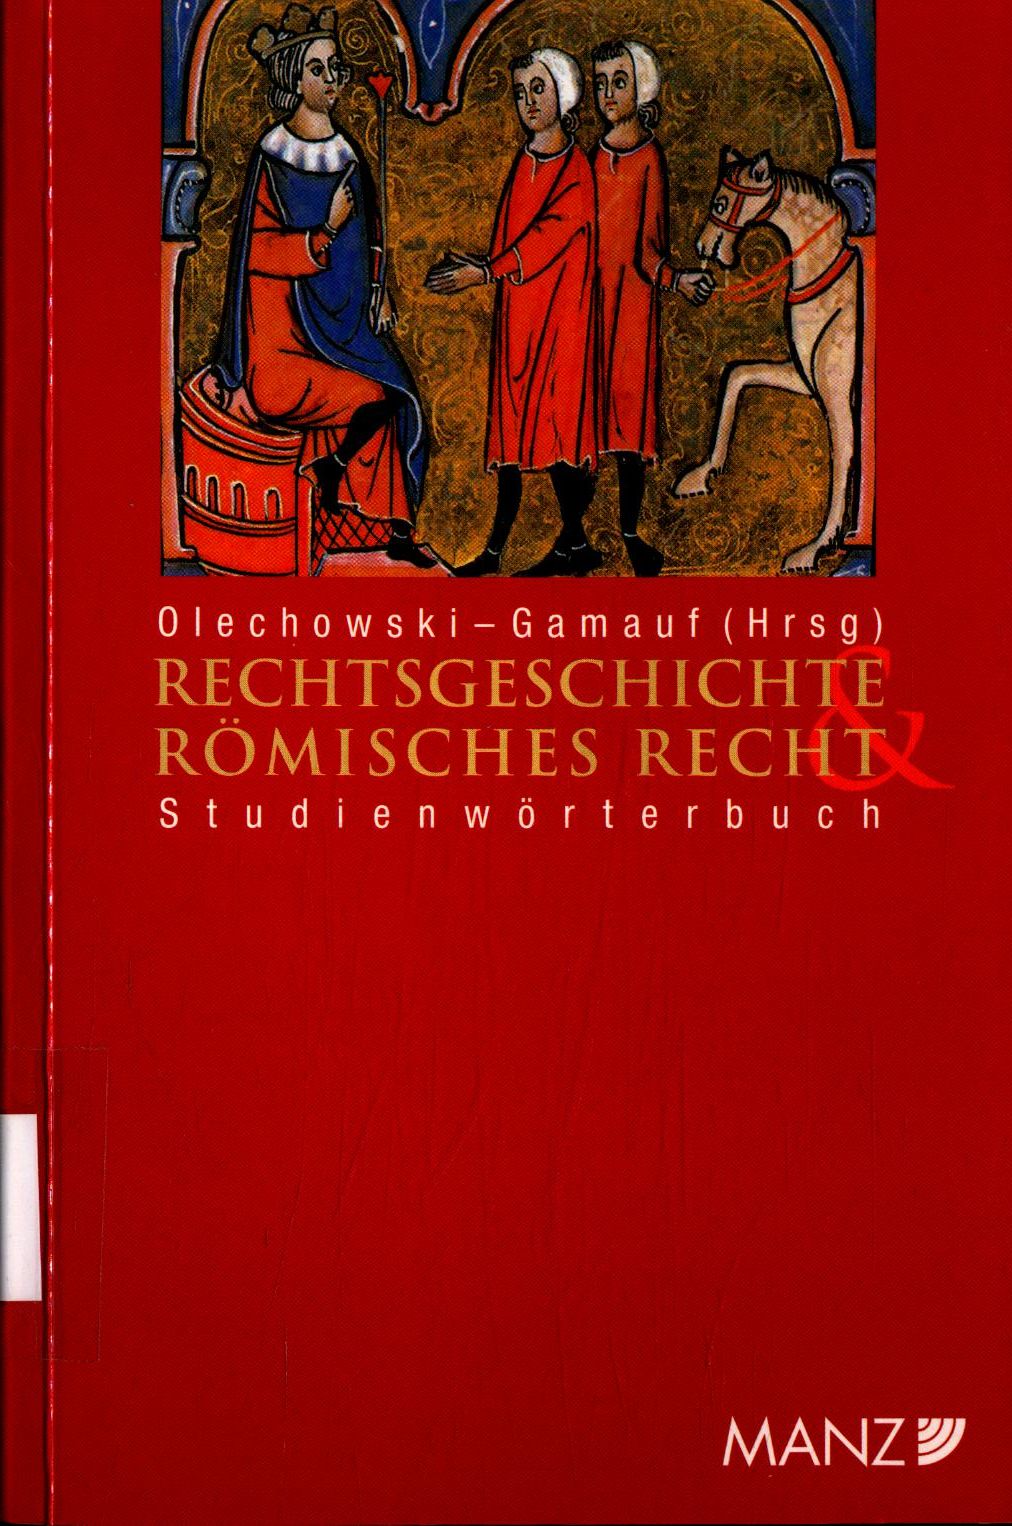 Studienwörterbuch Rechtsgeschichte und Römisches Recht - Olechowski, Thomas und Richard Gamauf